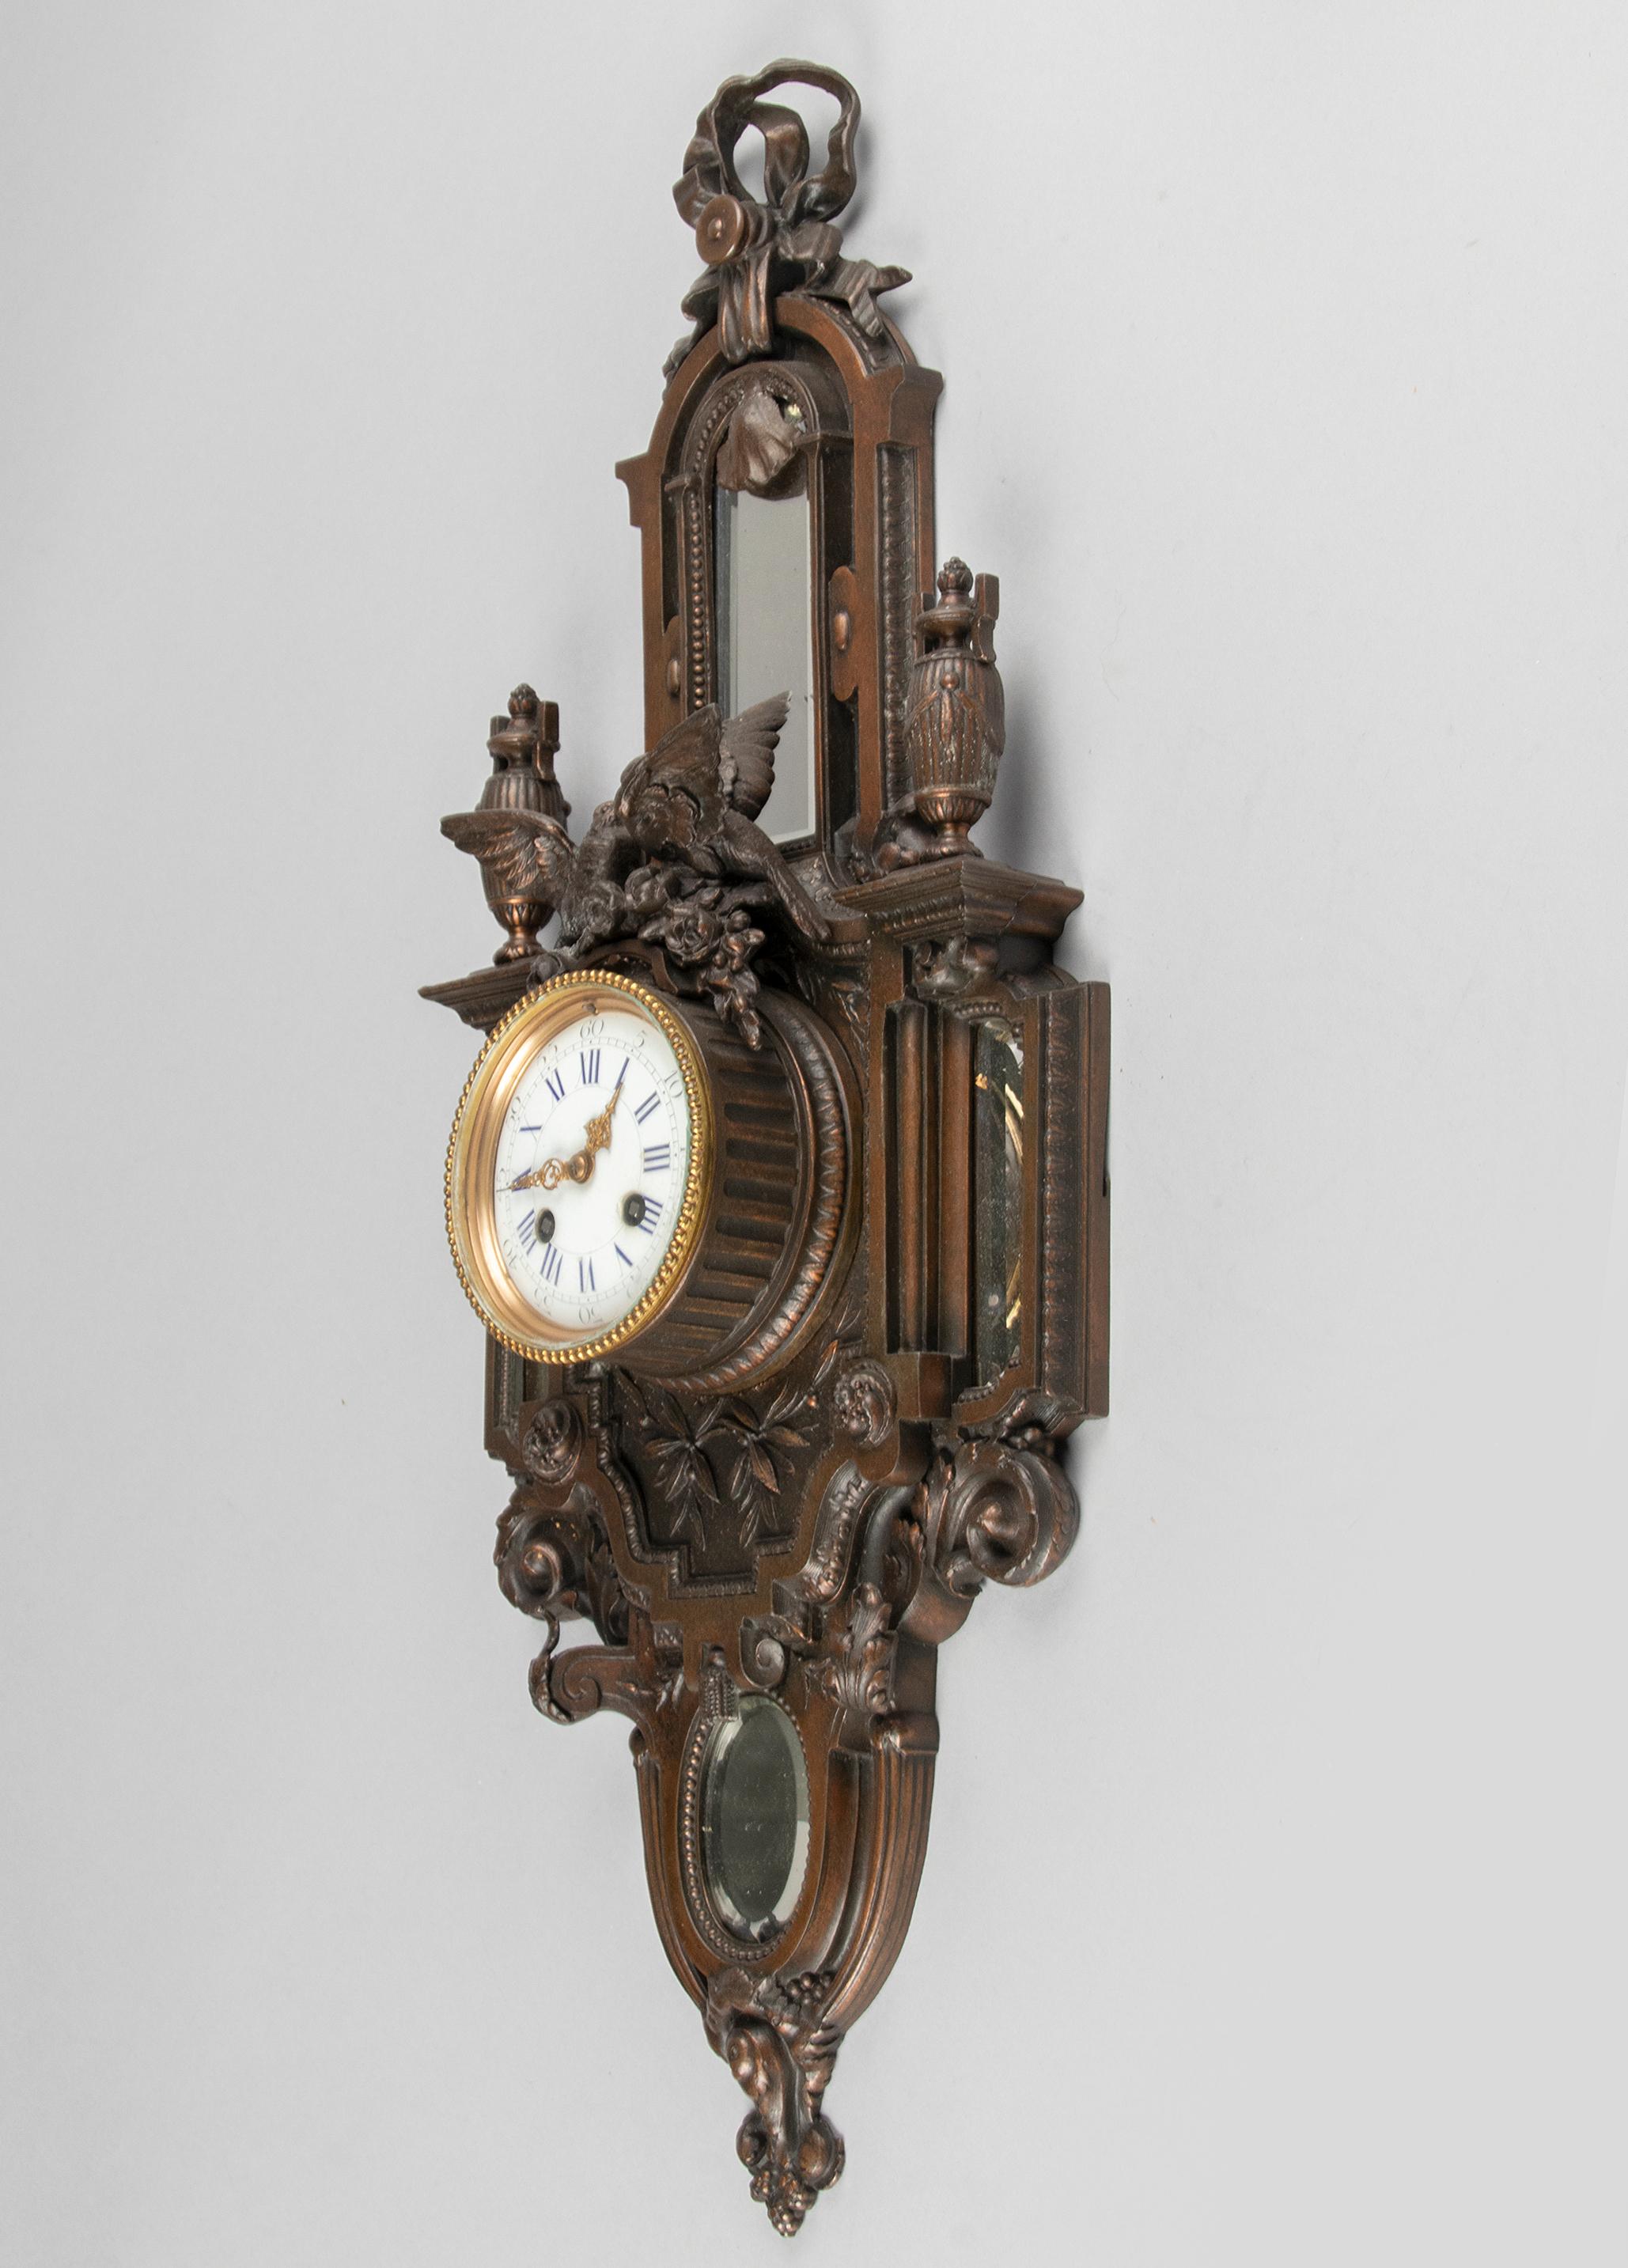 Eine Wanduhr im Stil Louis XVI, hergestellt in Frankreich um 1880-1890. Das Gehäuse besteht aus gegossenem Spelter (Metalllegierung) und ist mit vier abgeschrägten Spiegelgläsern ausgestattet. Das Zifferblatt ist mit einer emaillierten Oberfläche